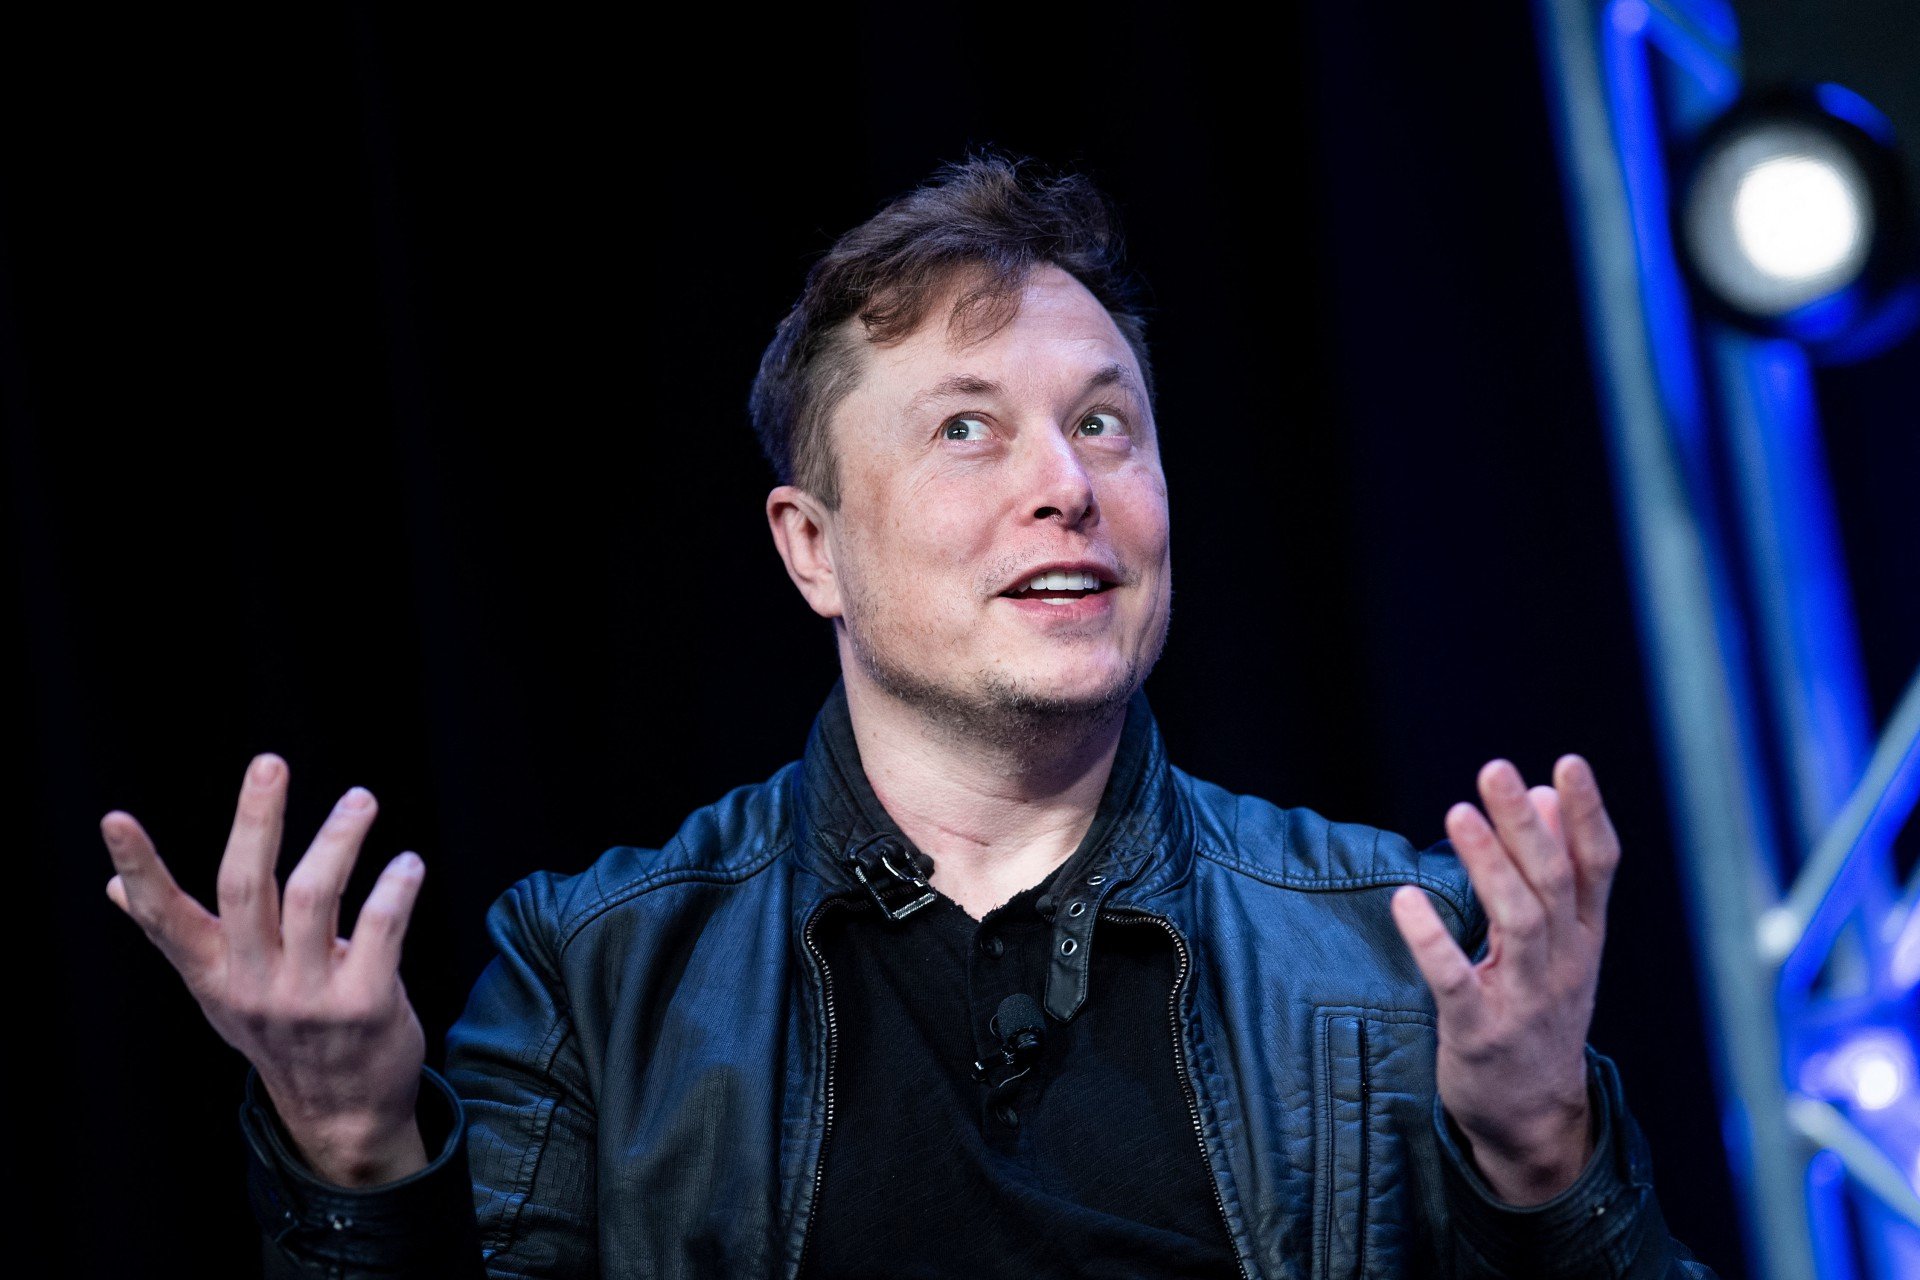 Elon Musk tem se envolvido em polêmicas relacionadas a sua postura no comando do Twitter (Foto: Brendan Smialowski / AFP)